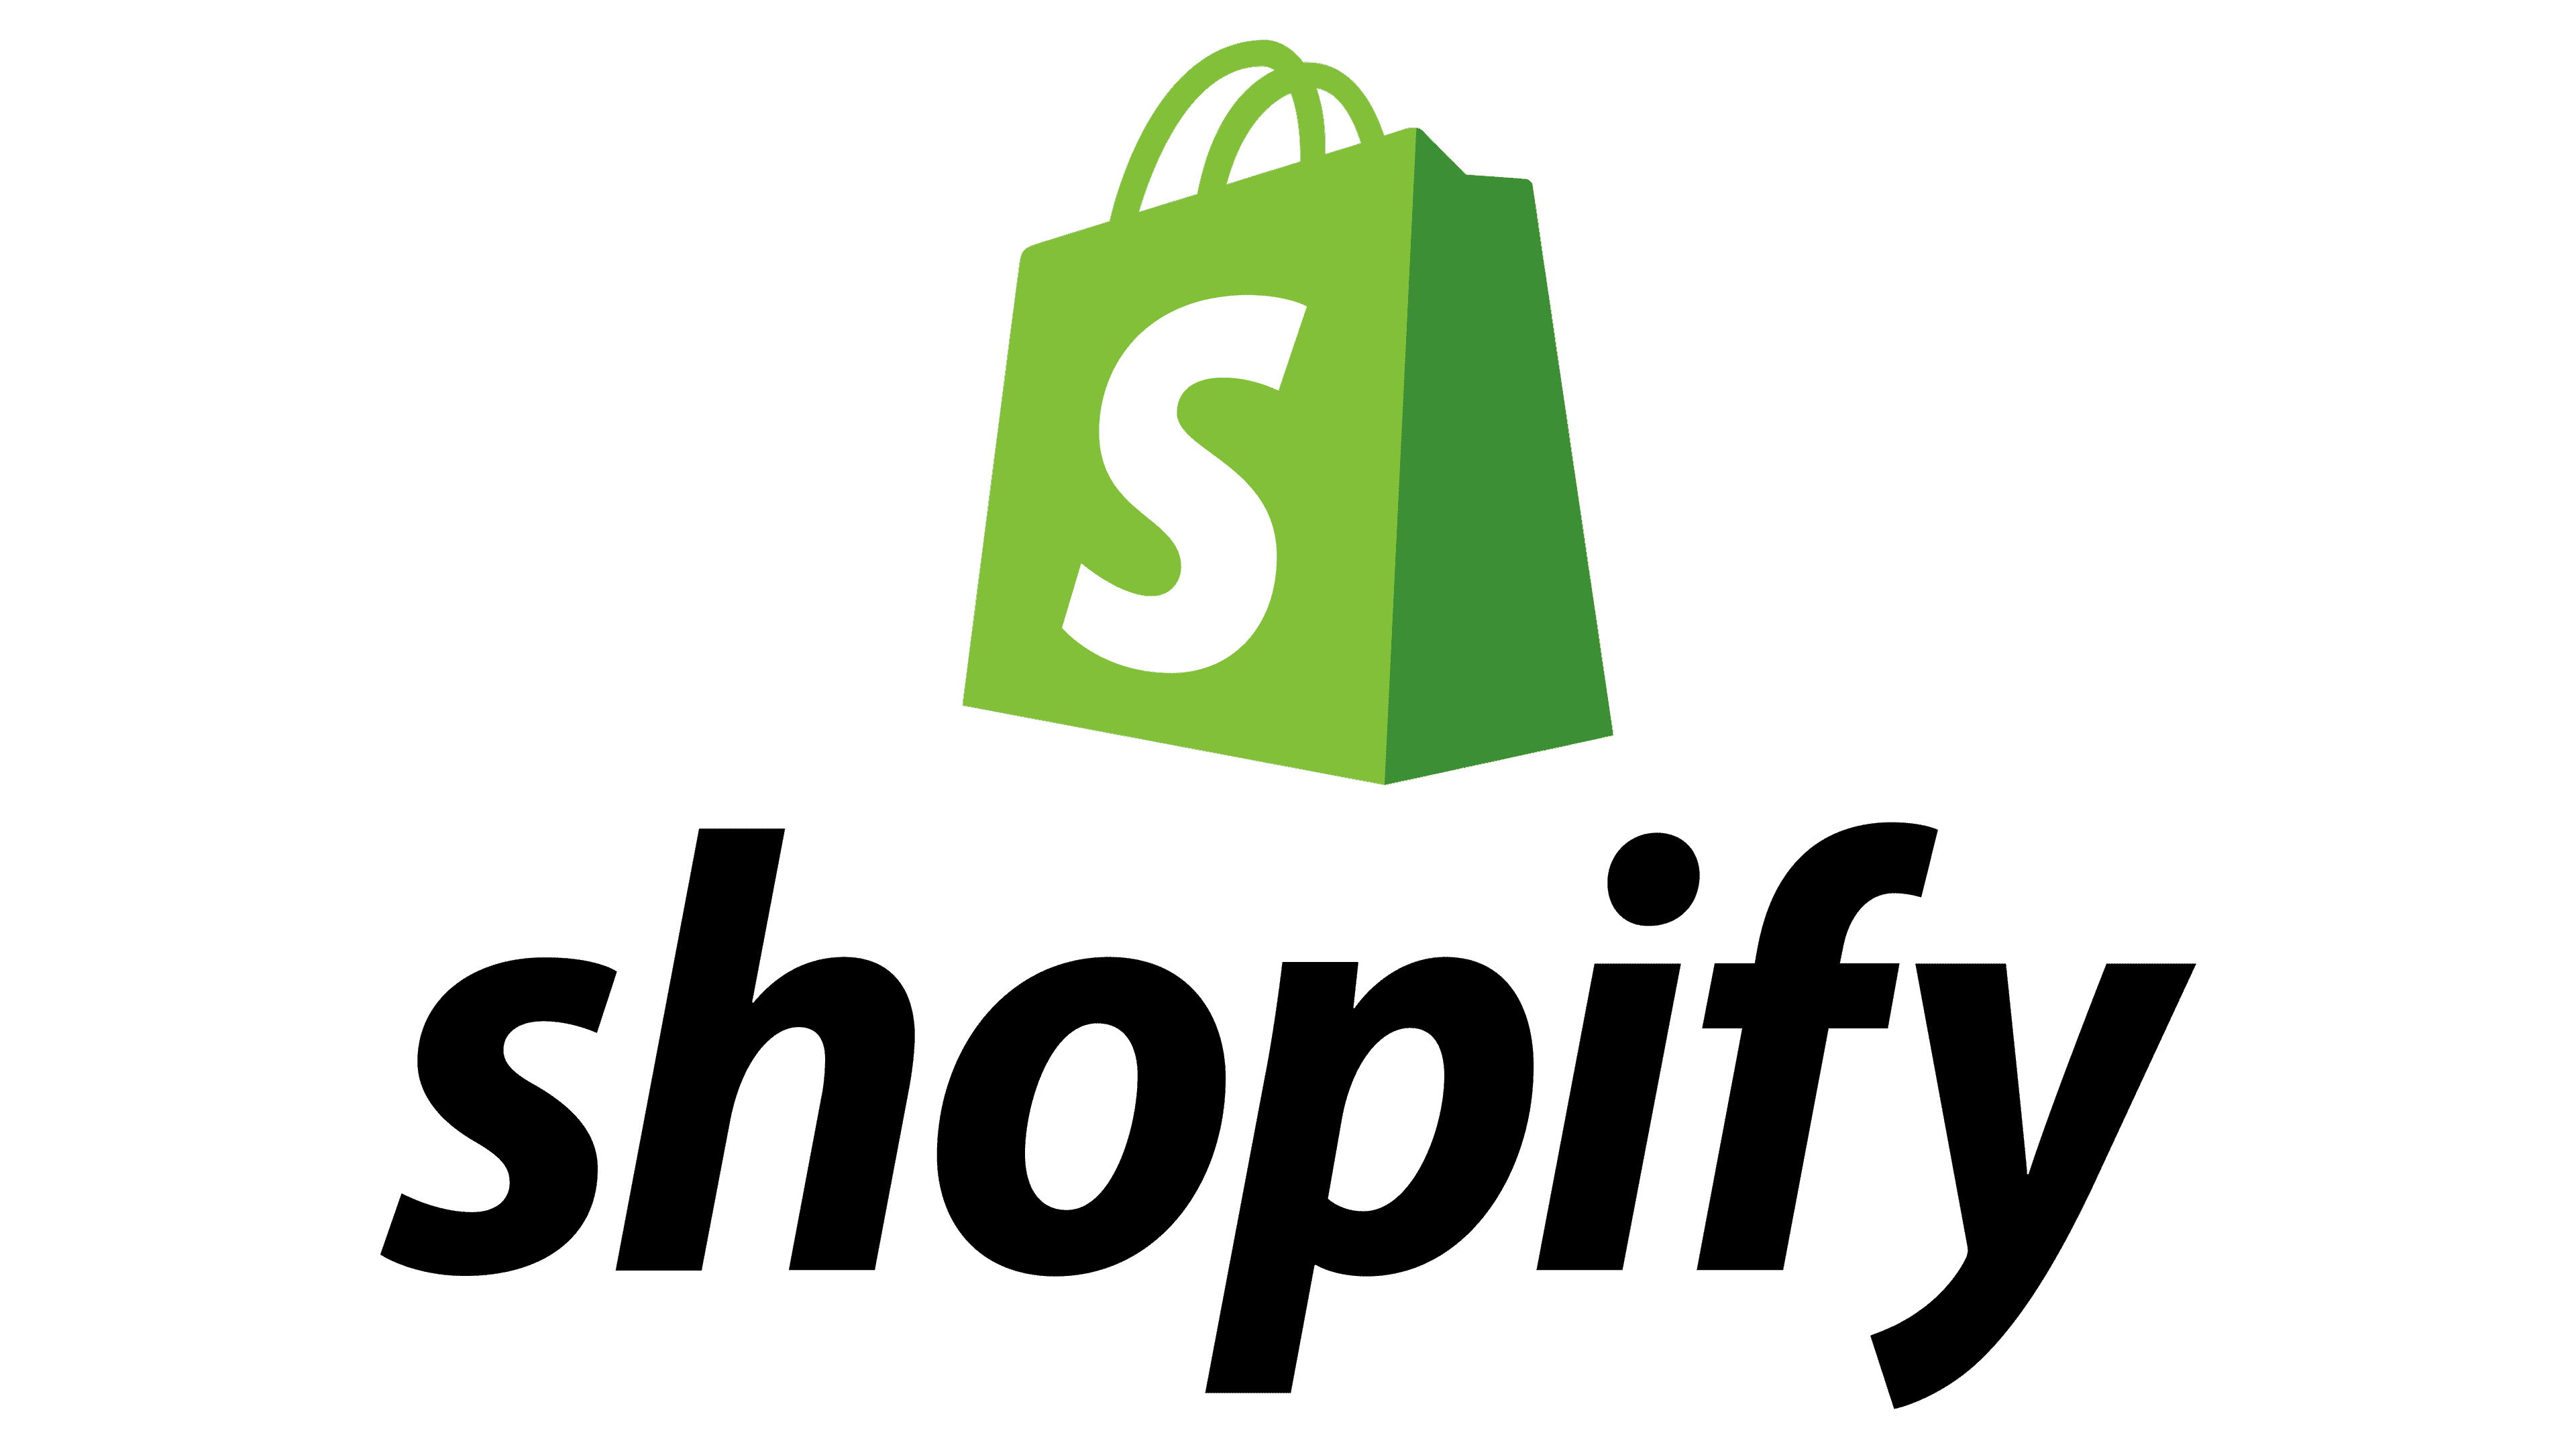 Shoopify Integratie - Trengo Software Integratie - Boozt.